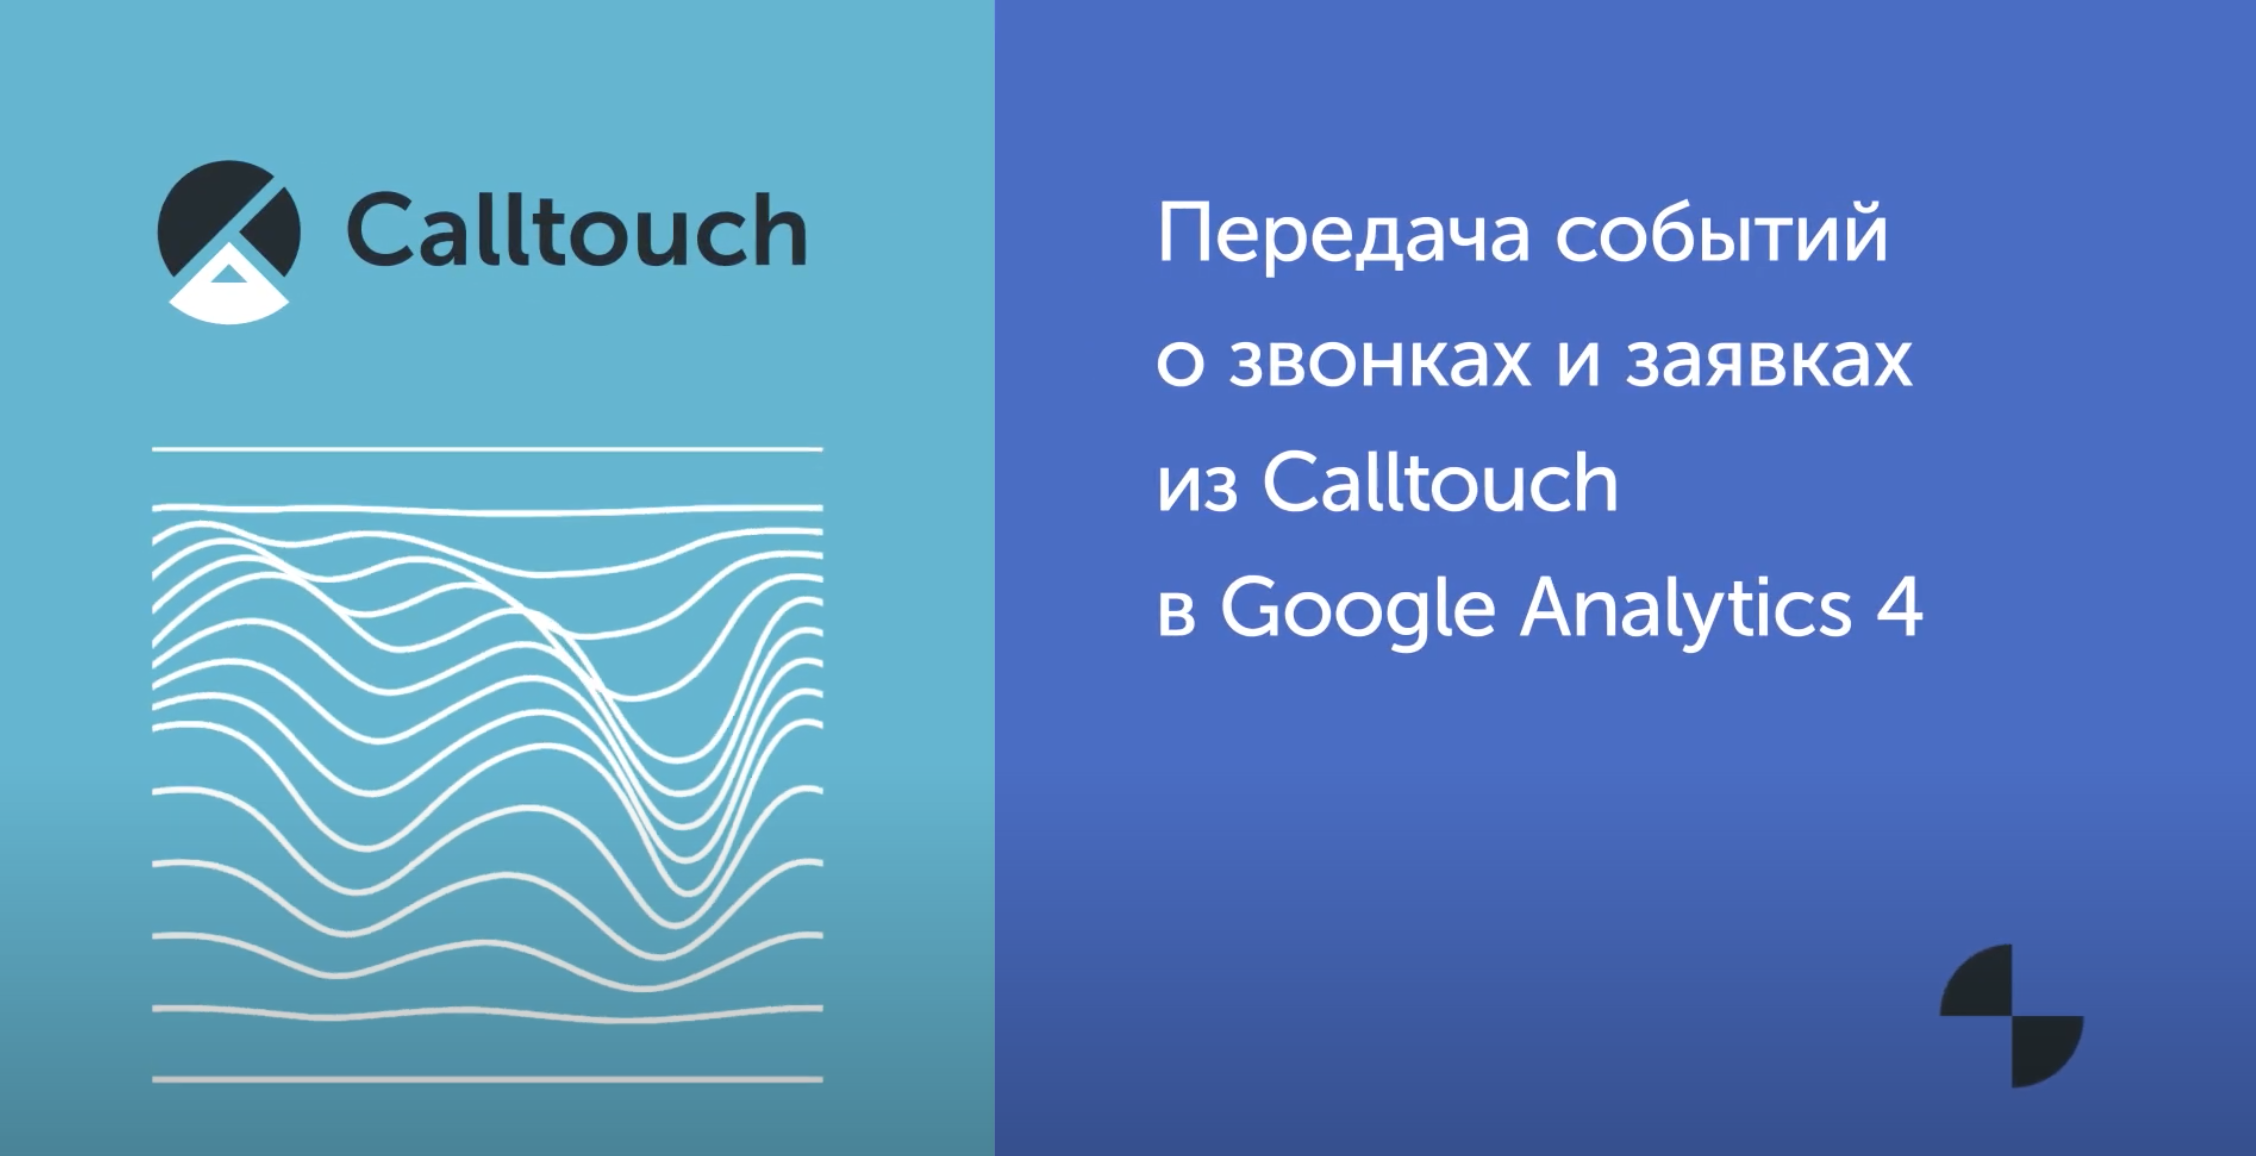 Передача событий о звонках и заявках из Calltouch в Google Analytics 4